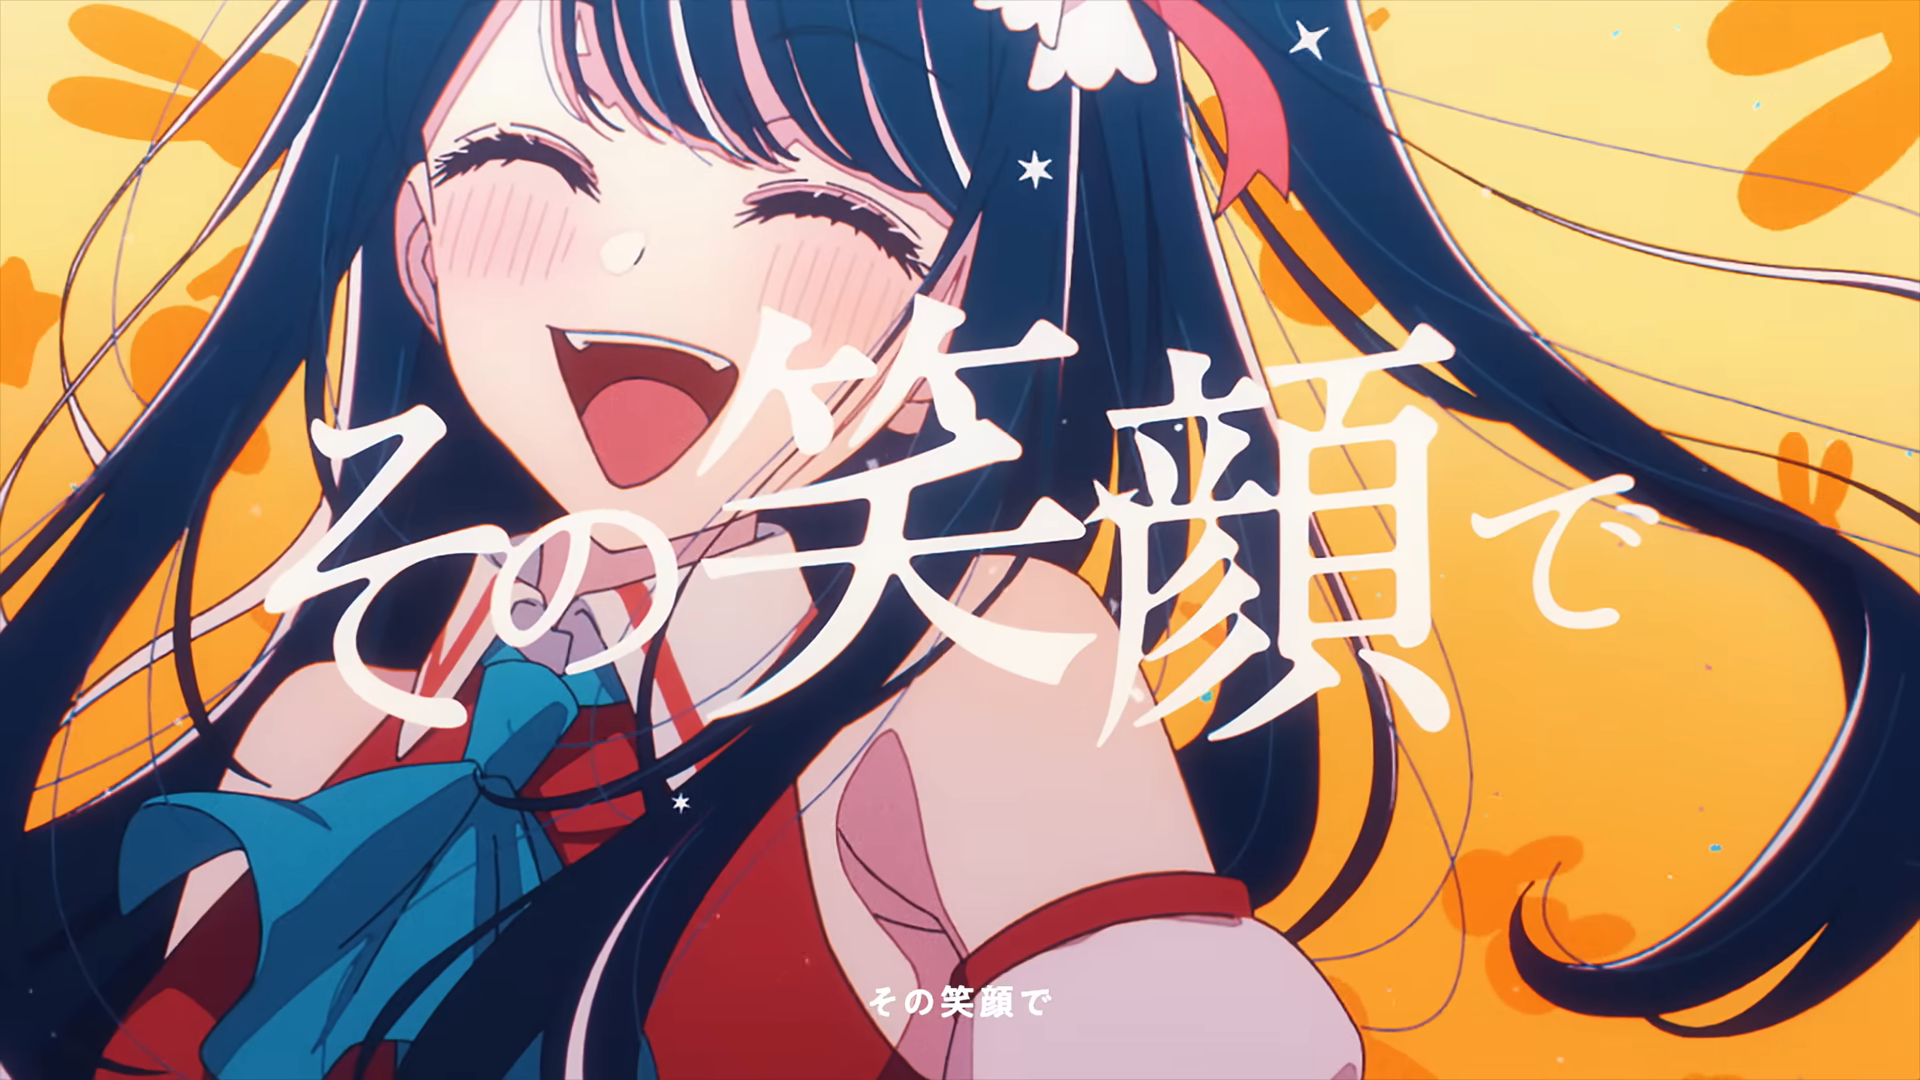 Revista Yume – Idol de YOASOBI, opening de Oshi no Ko, supera las 200  millones de reproducciones